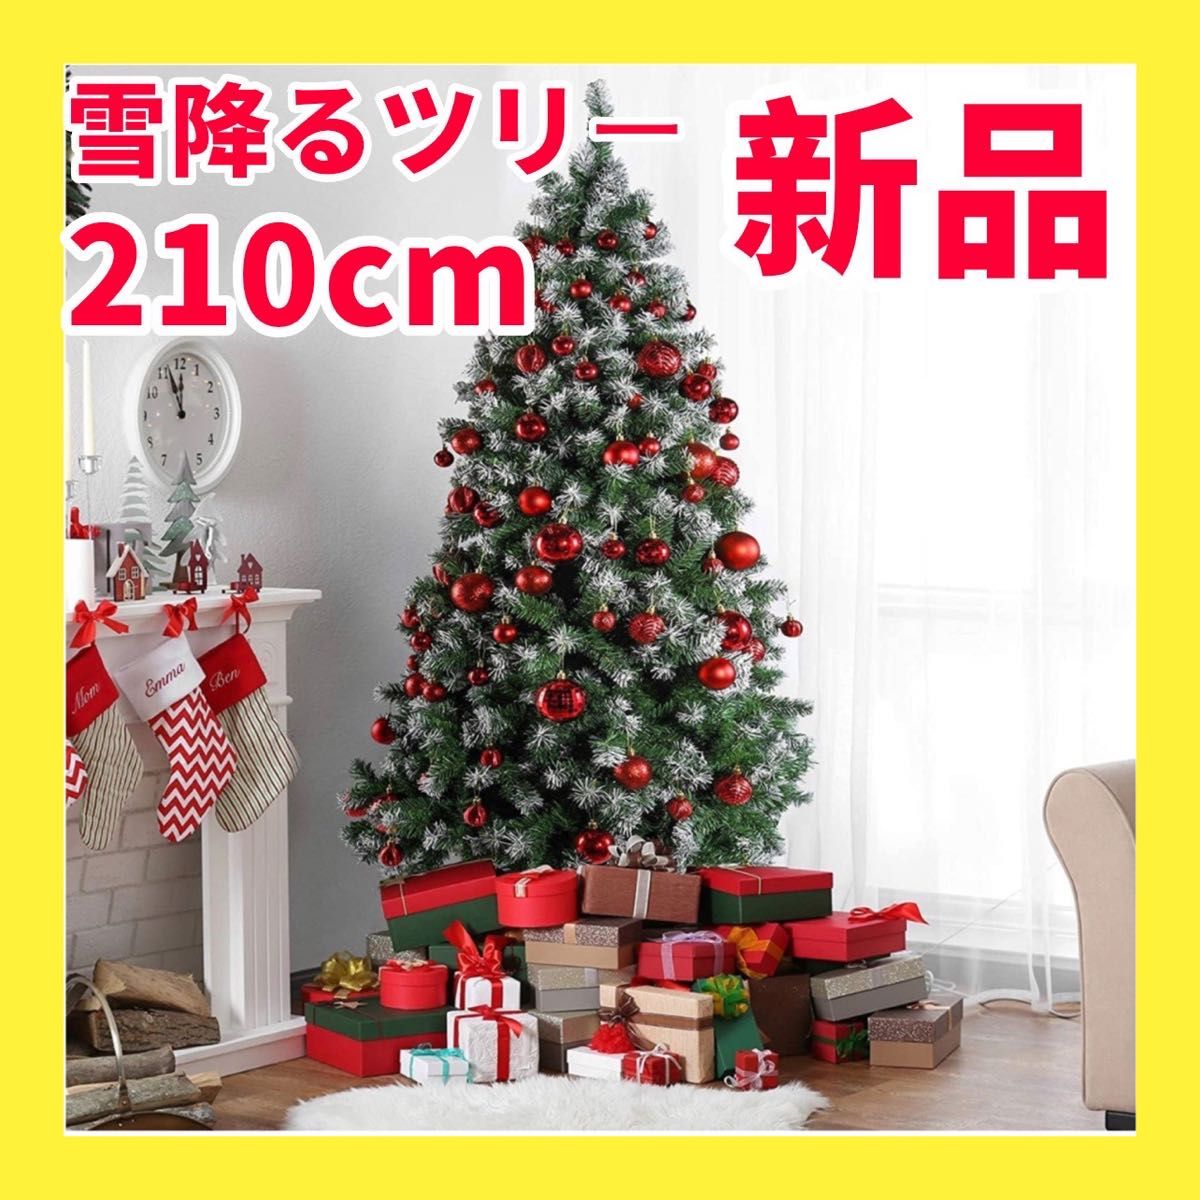 クリスマスツリーまつぼっくり 210cm 雪付き 北欧風 松ぼっくり 雪化粧 スノー 150cm 180cm インテリア ツリー